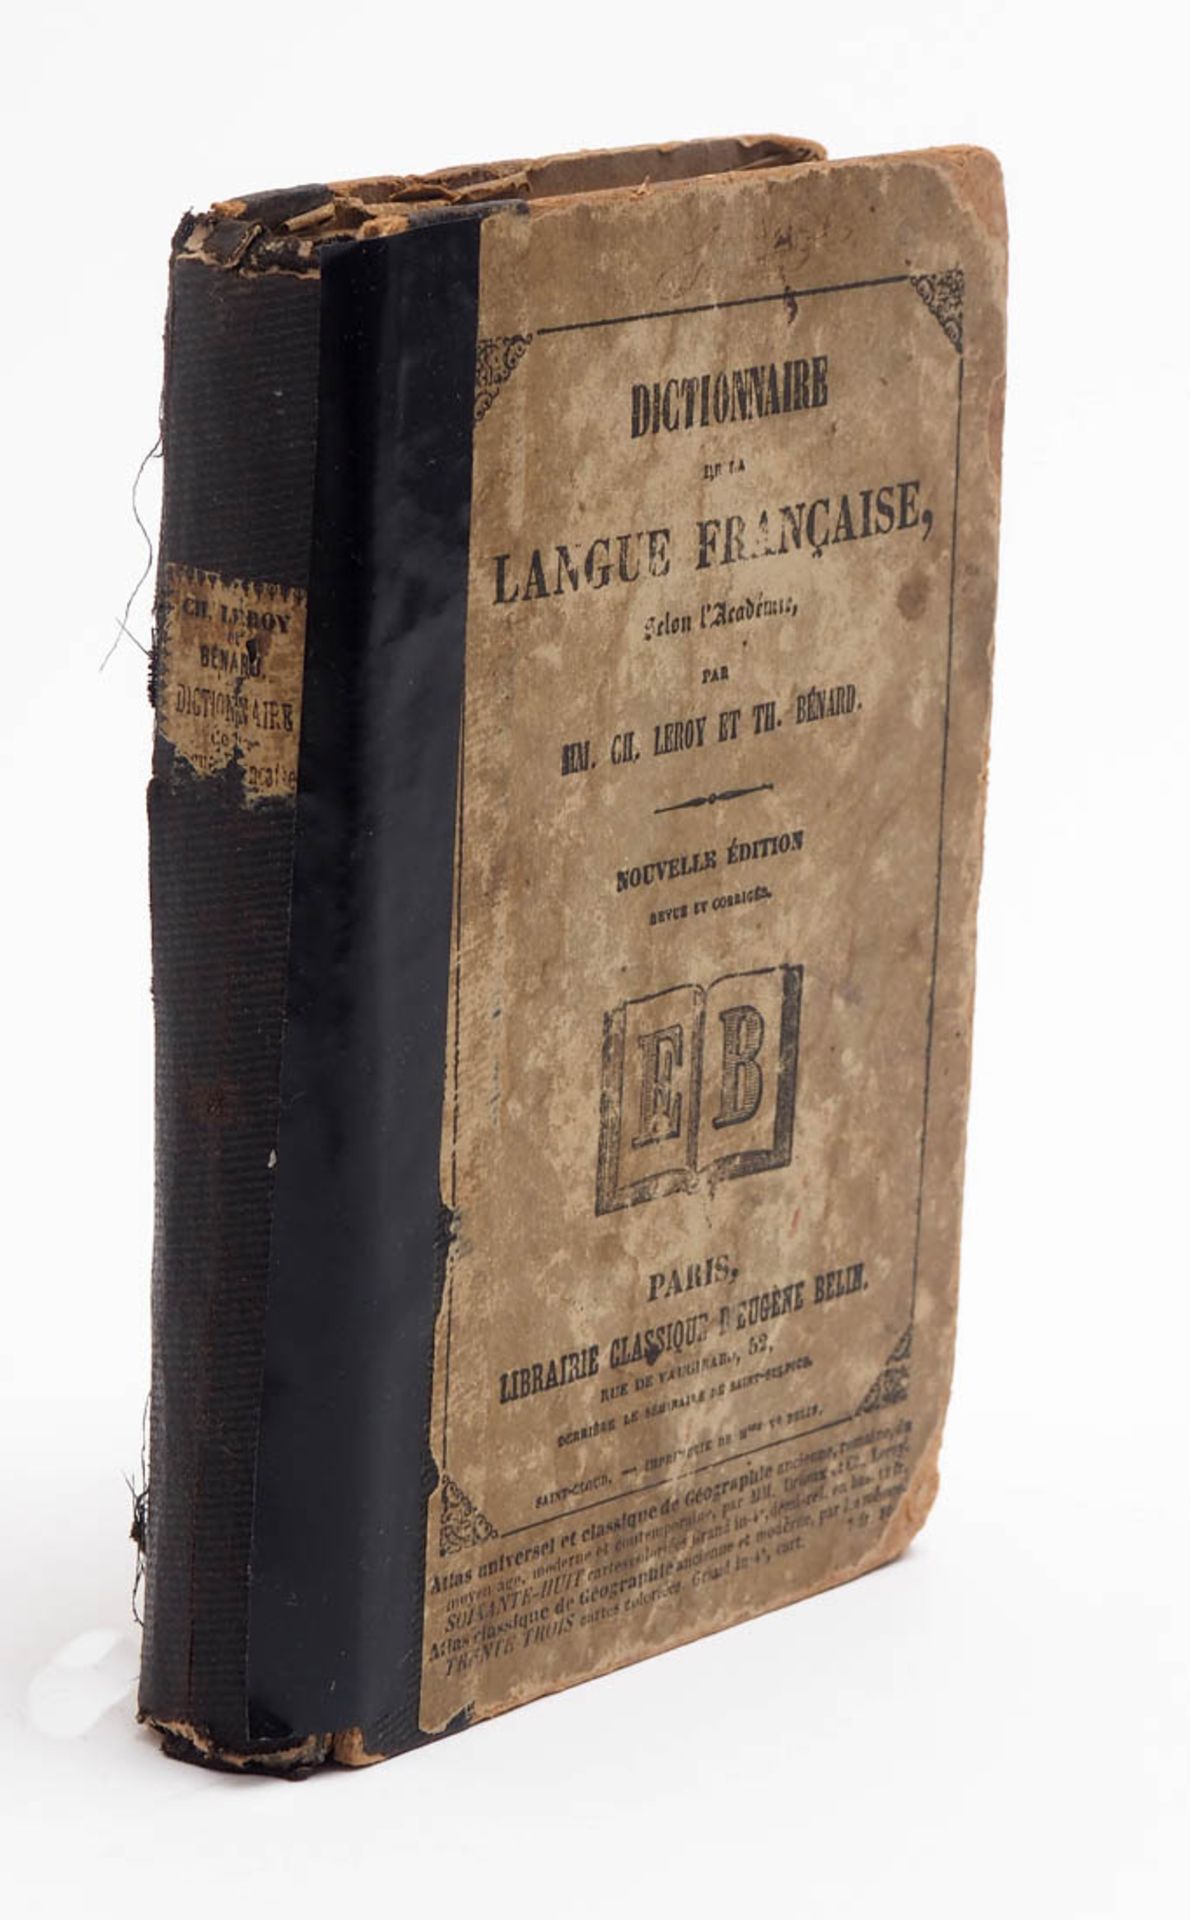 Französisches Wörterbuch Leroy und Bénard: Dictionnaire de la langue francaise, Belin, Paris 1860.